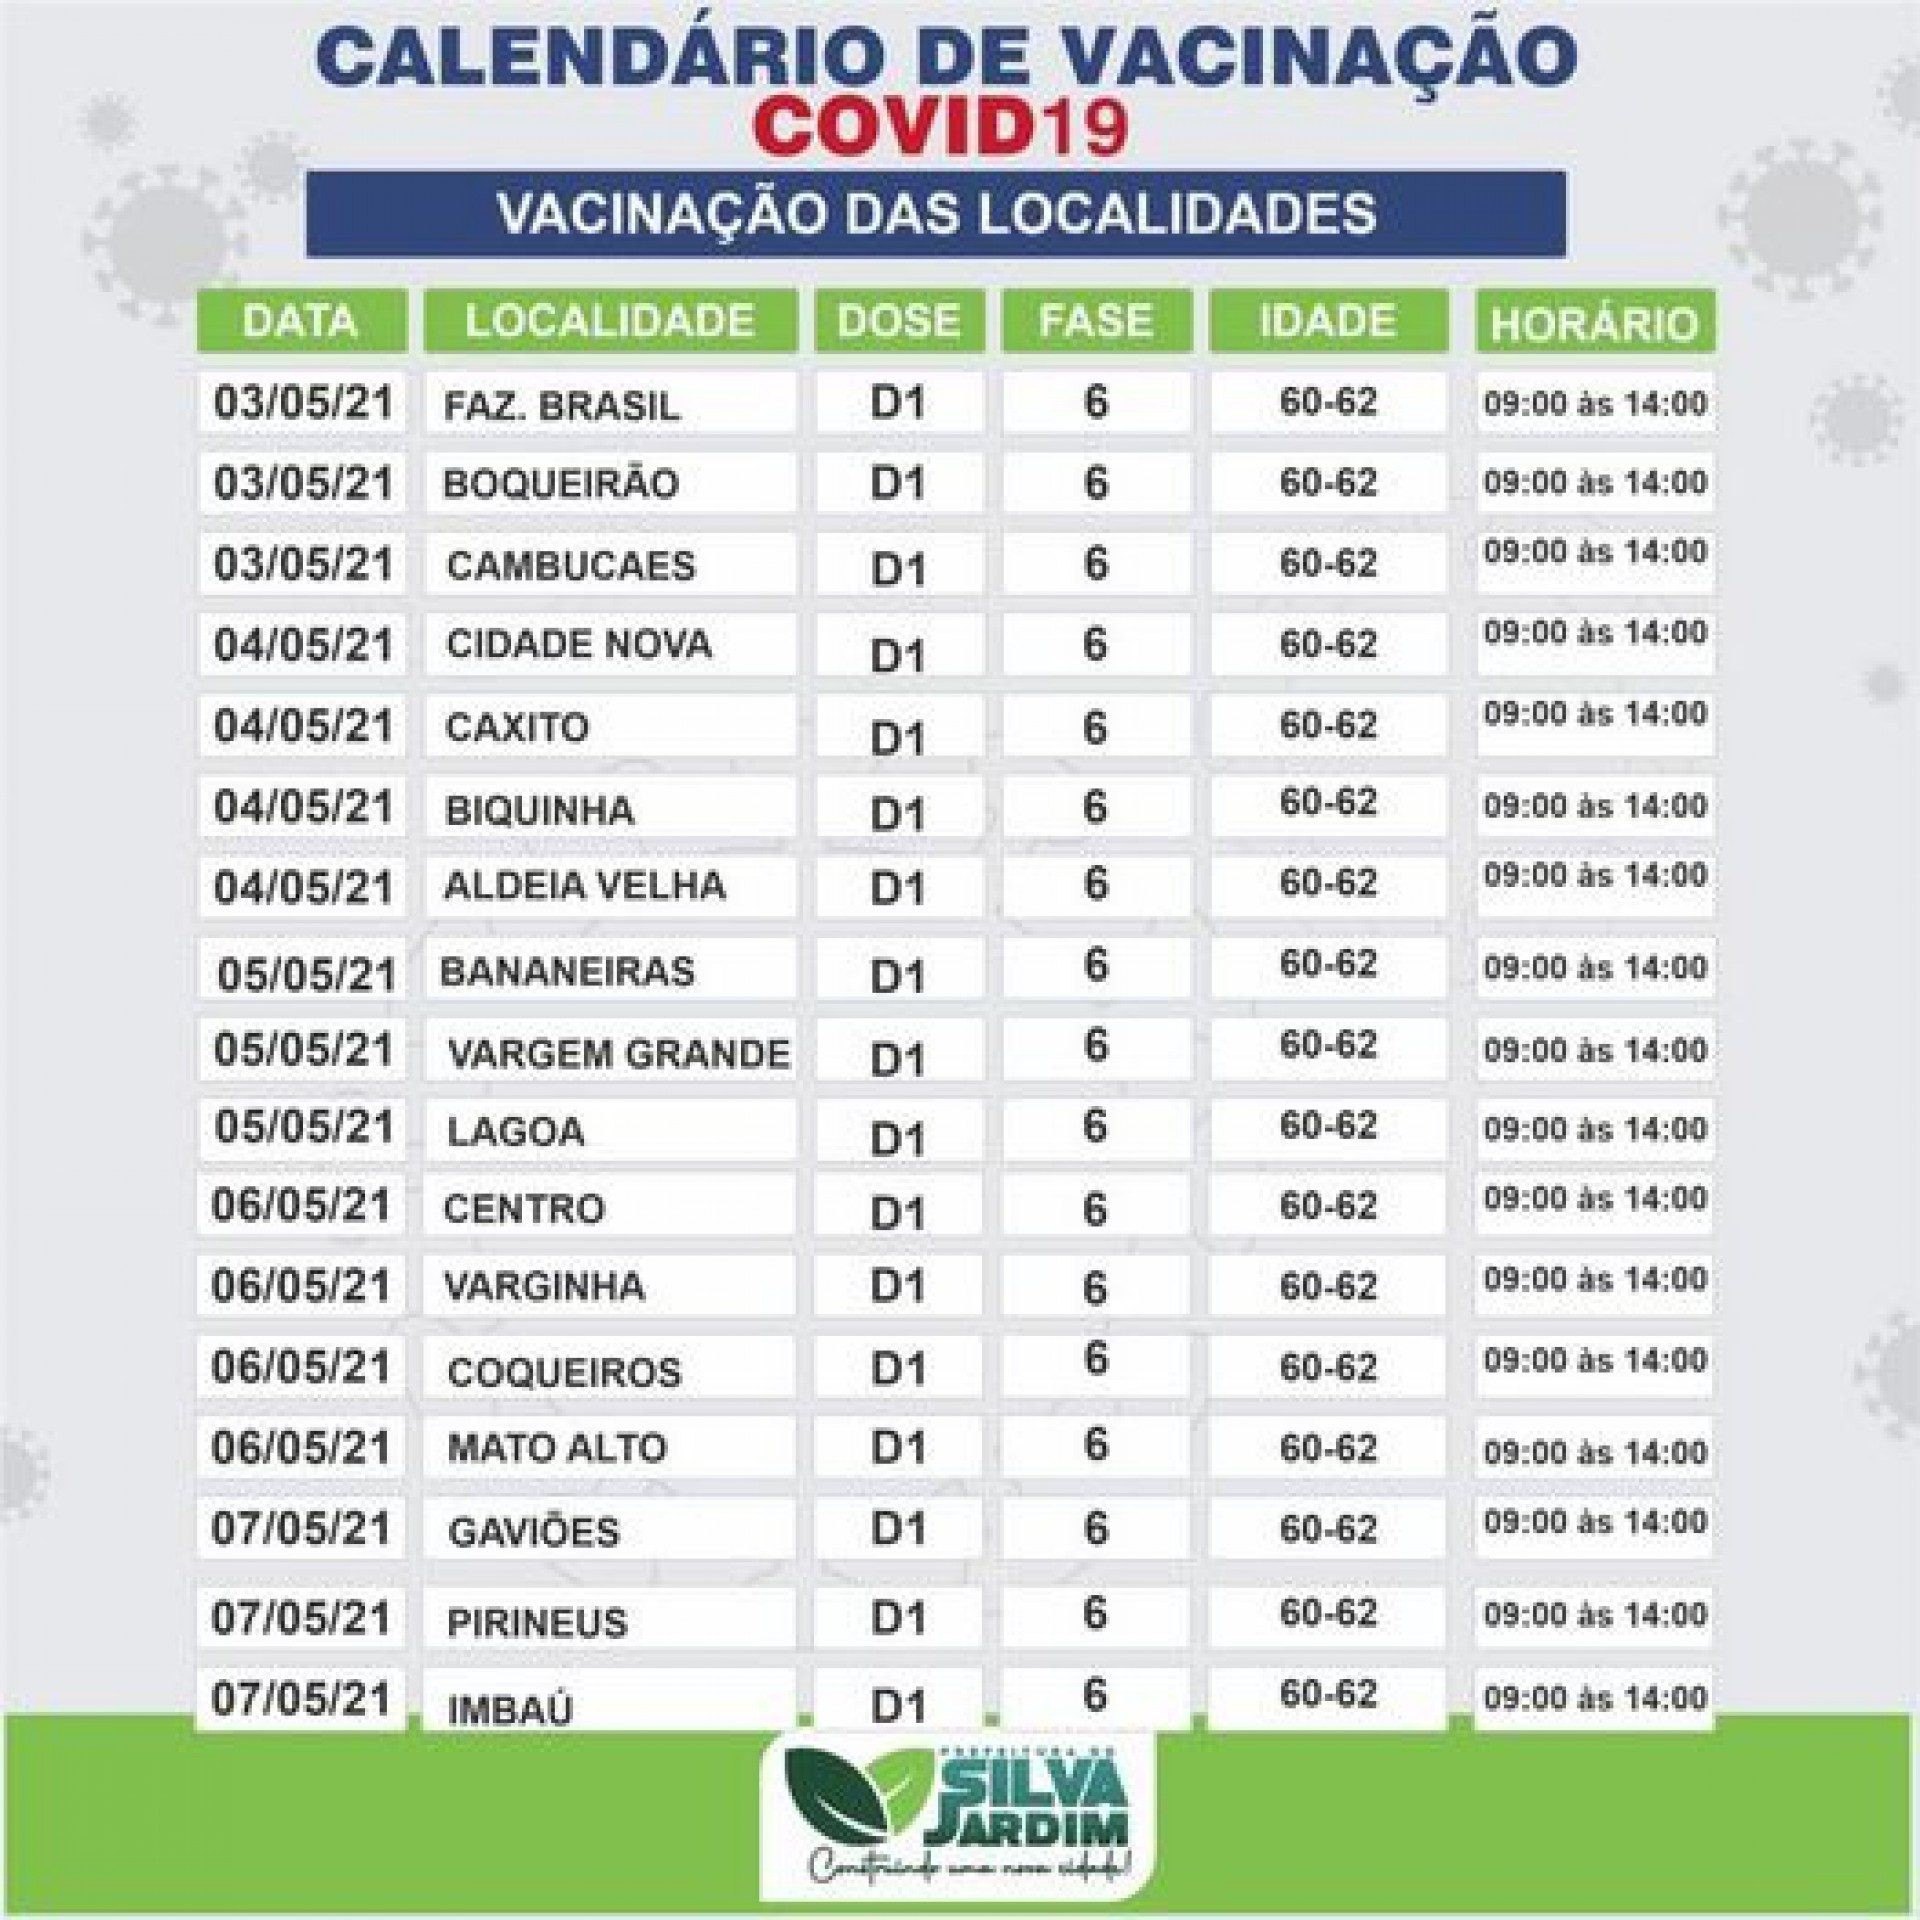 Calendário da 'Fase 6' divulgado pela Prefeitura de Silva Jardim - Foto: Divulgação